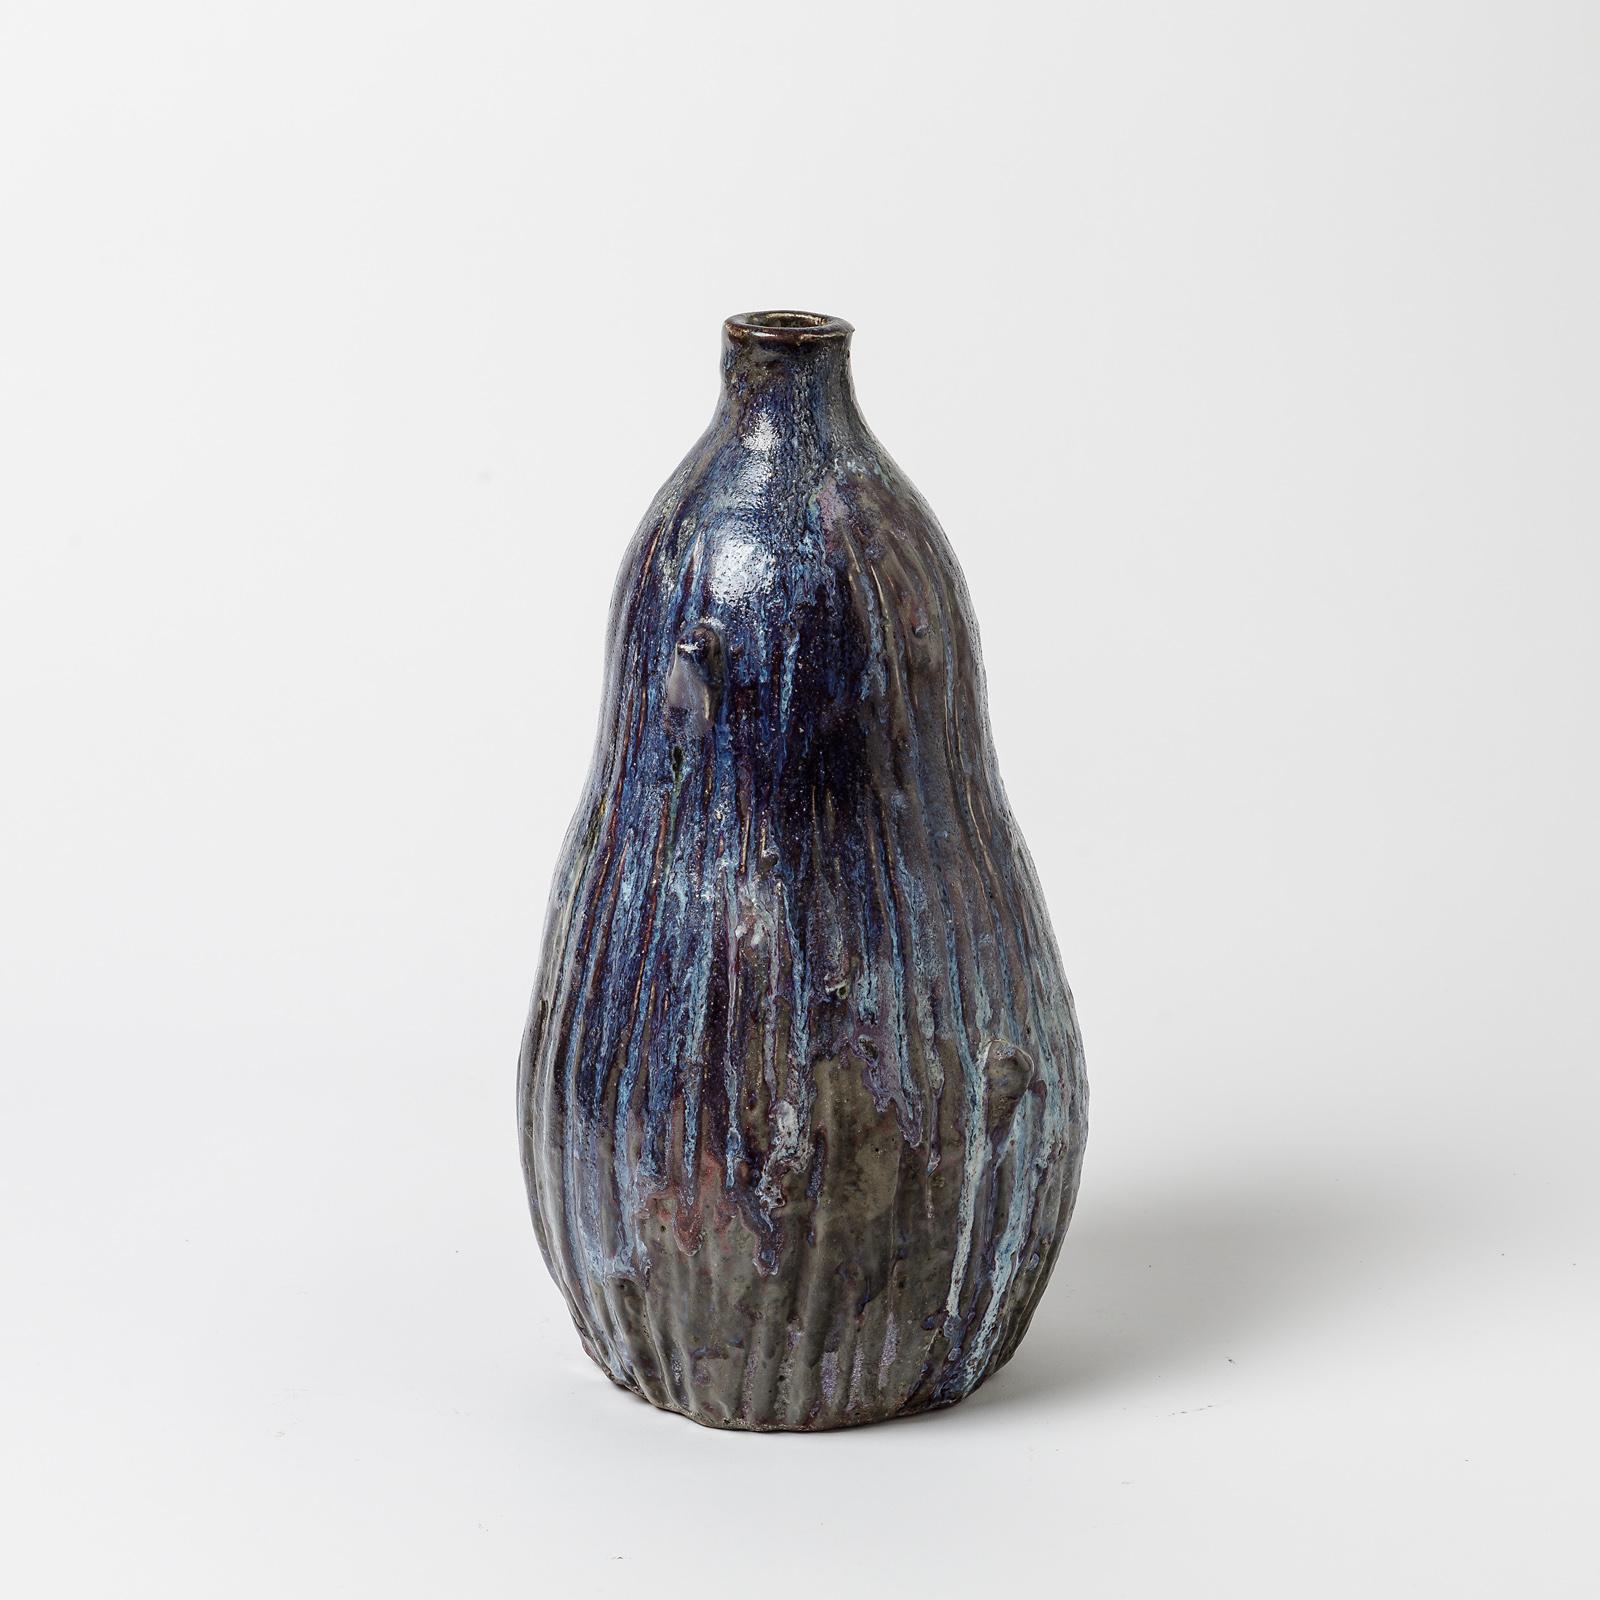 Vase aus Keramik mit weißem Glasurdekor.
Perfekter Originalzustand.
Unter dem Sockel signiert 